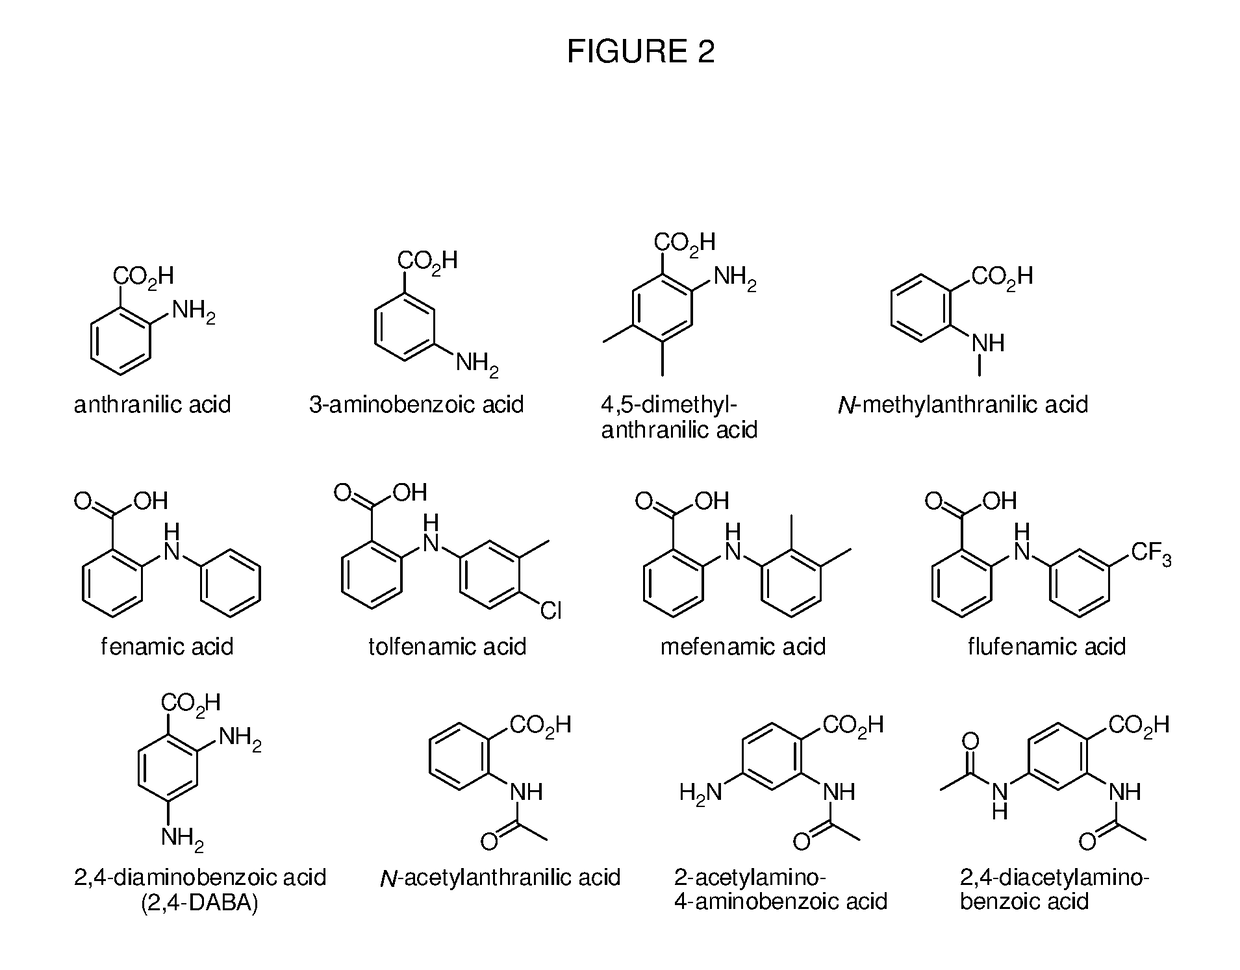 Benzoic acid, benzoic acid derivatives and heteroaryl carboxylic acid conjugates of oxymorphone, prodrugs, methods of making and use thereof